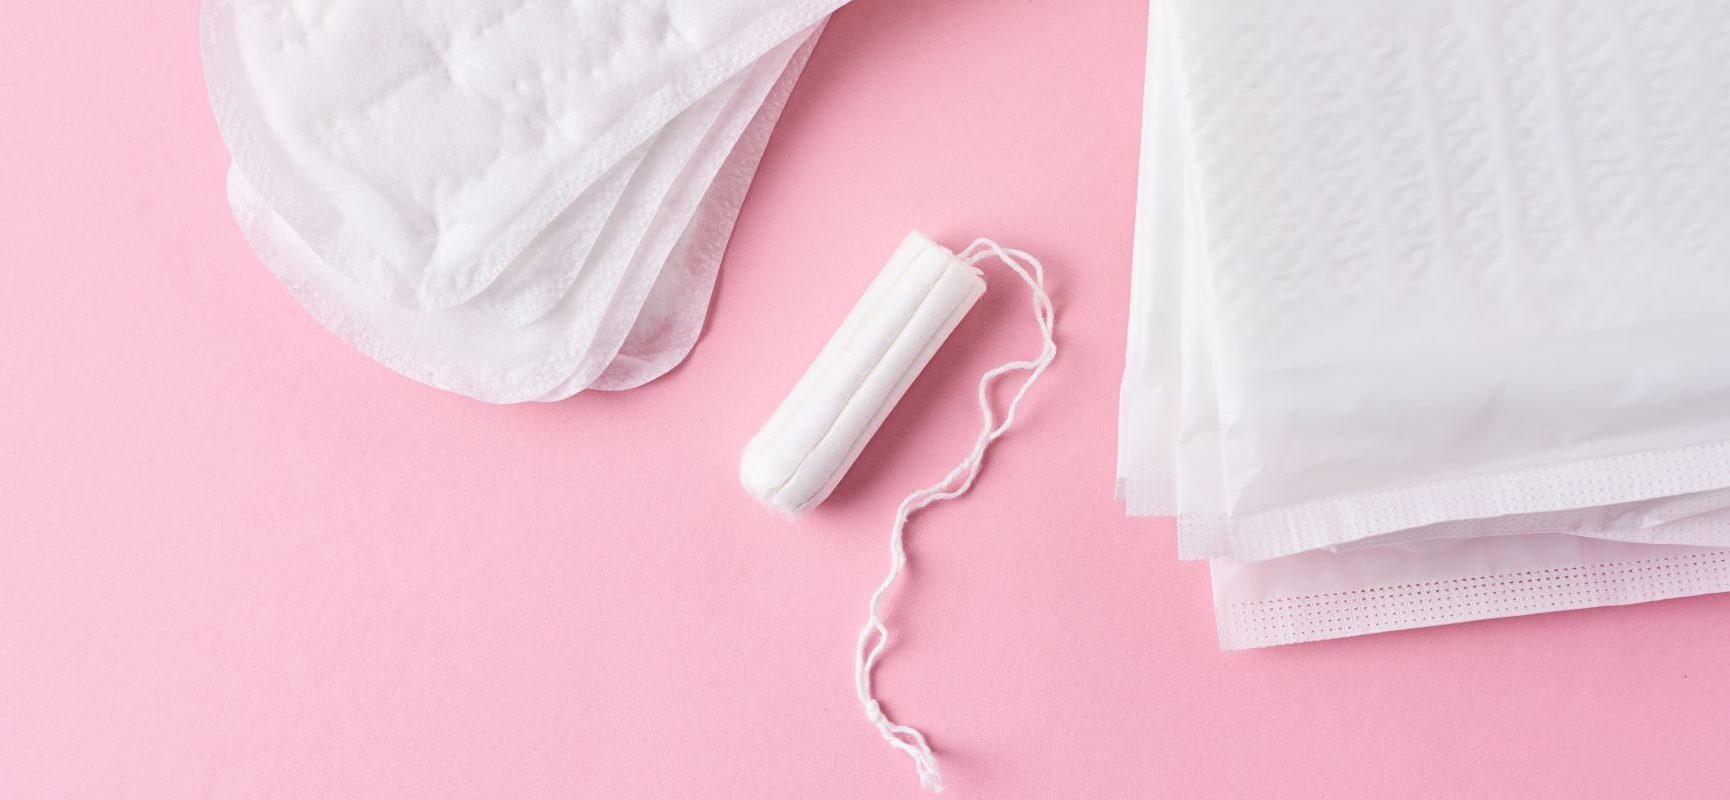 Podpaski i tampony szkodzą zdrowiu. Jak wybrać bezpieczne podpaski, tampony, wkładki i płyny do higieny intymnej?